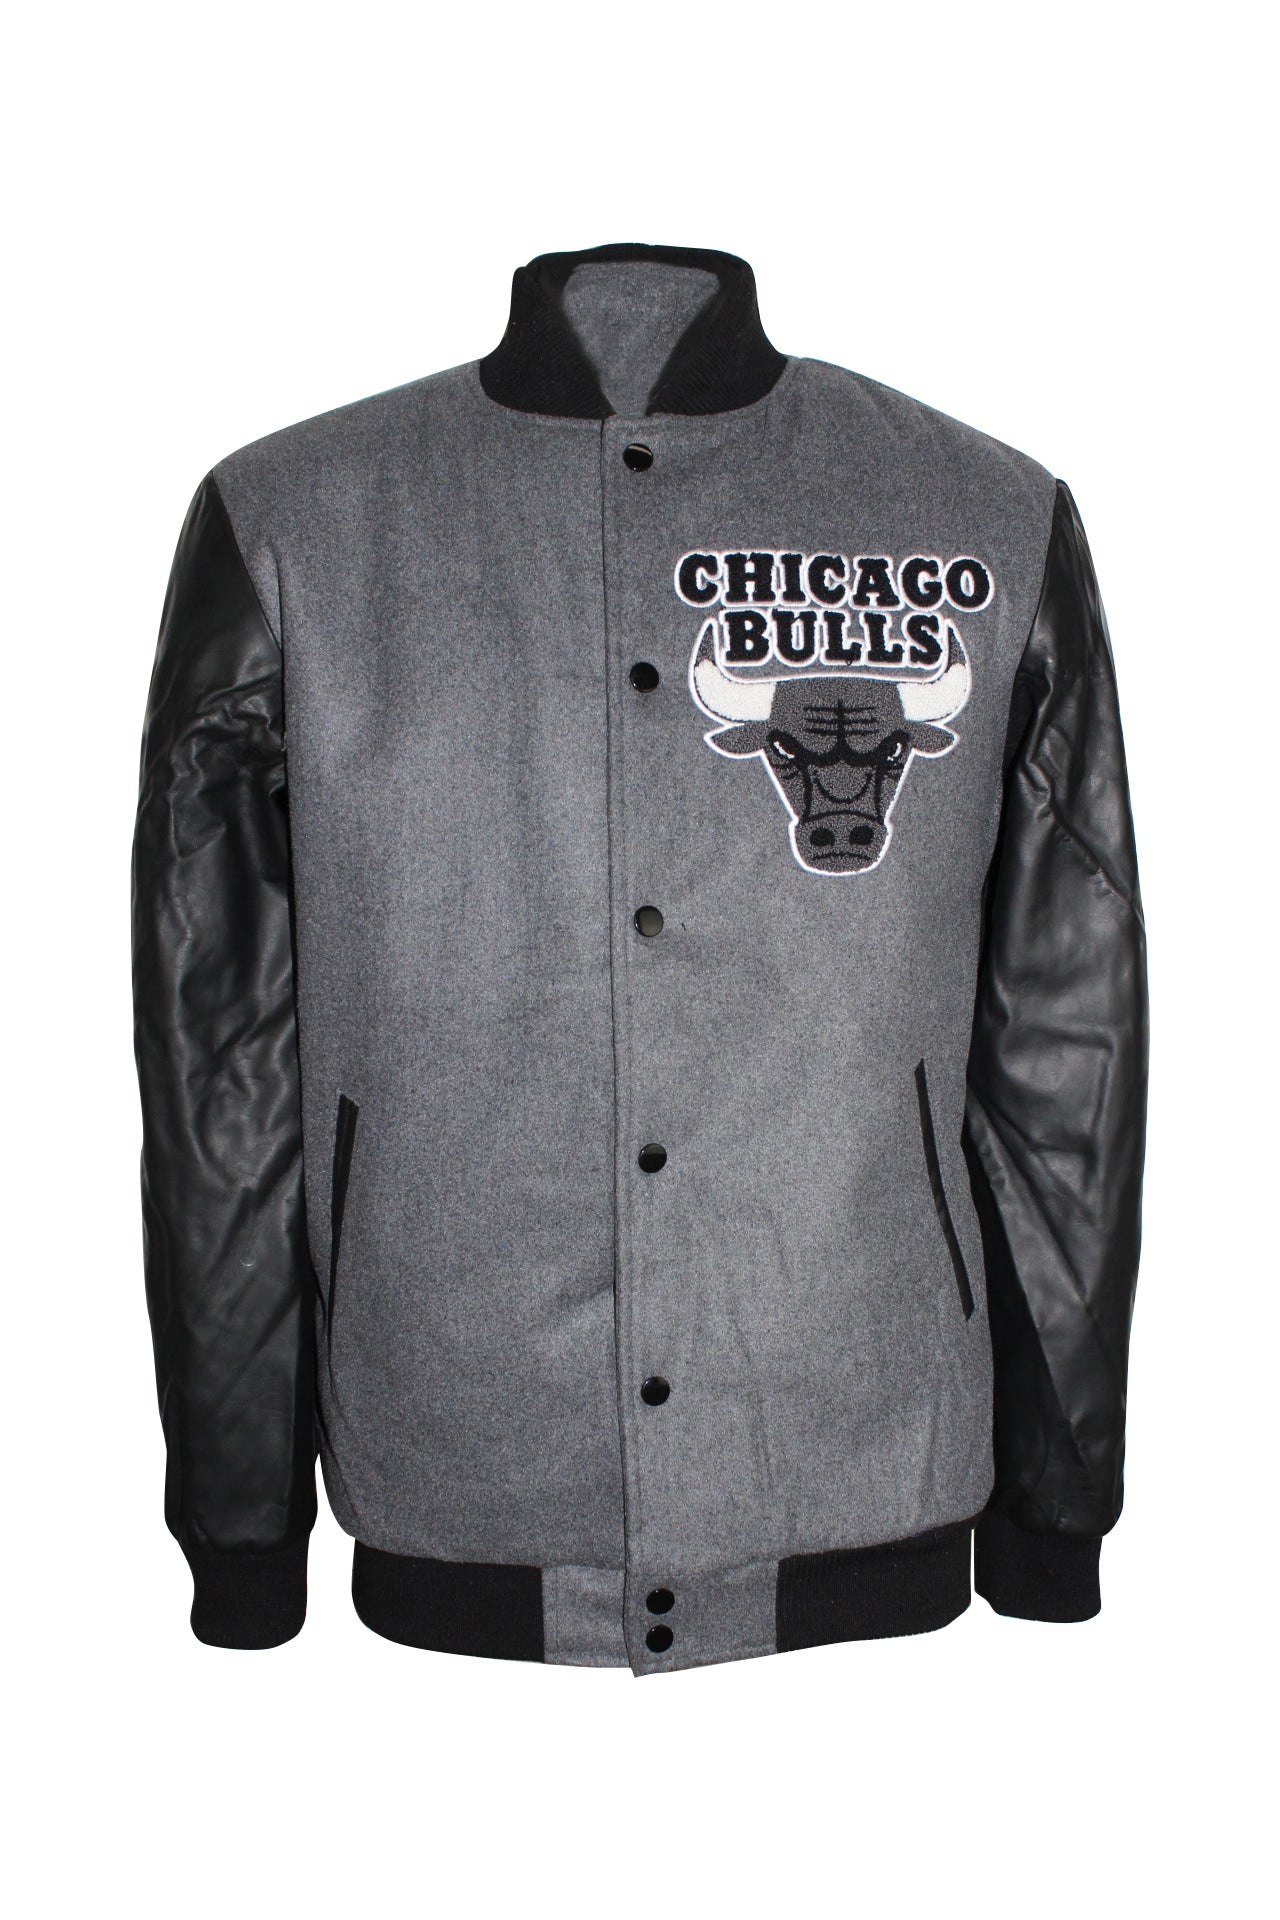 chicago bulls varsity jacket white